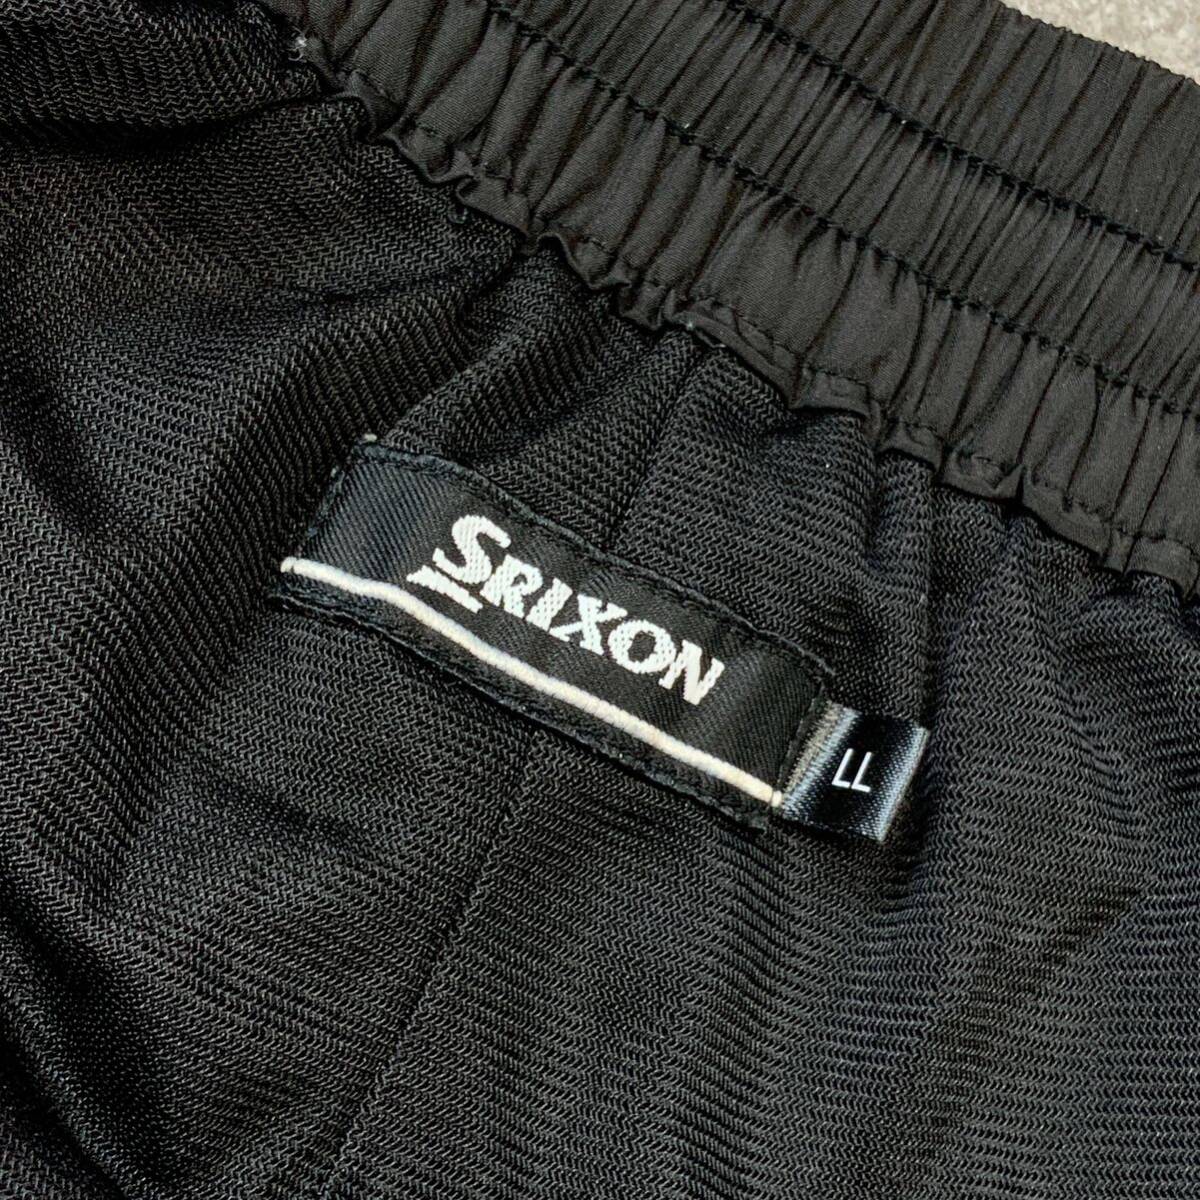 良品 SRIXON スリクソン ナイロンパンツ ゴルフパンツ メンズ LLサイズ ブラック レッド ゴルフ golf_画像8